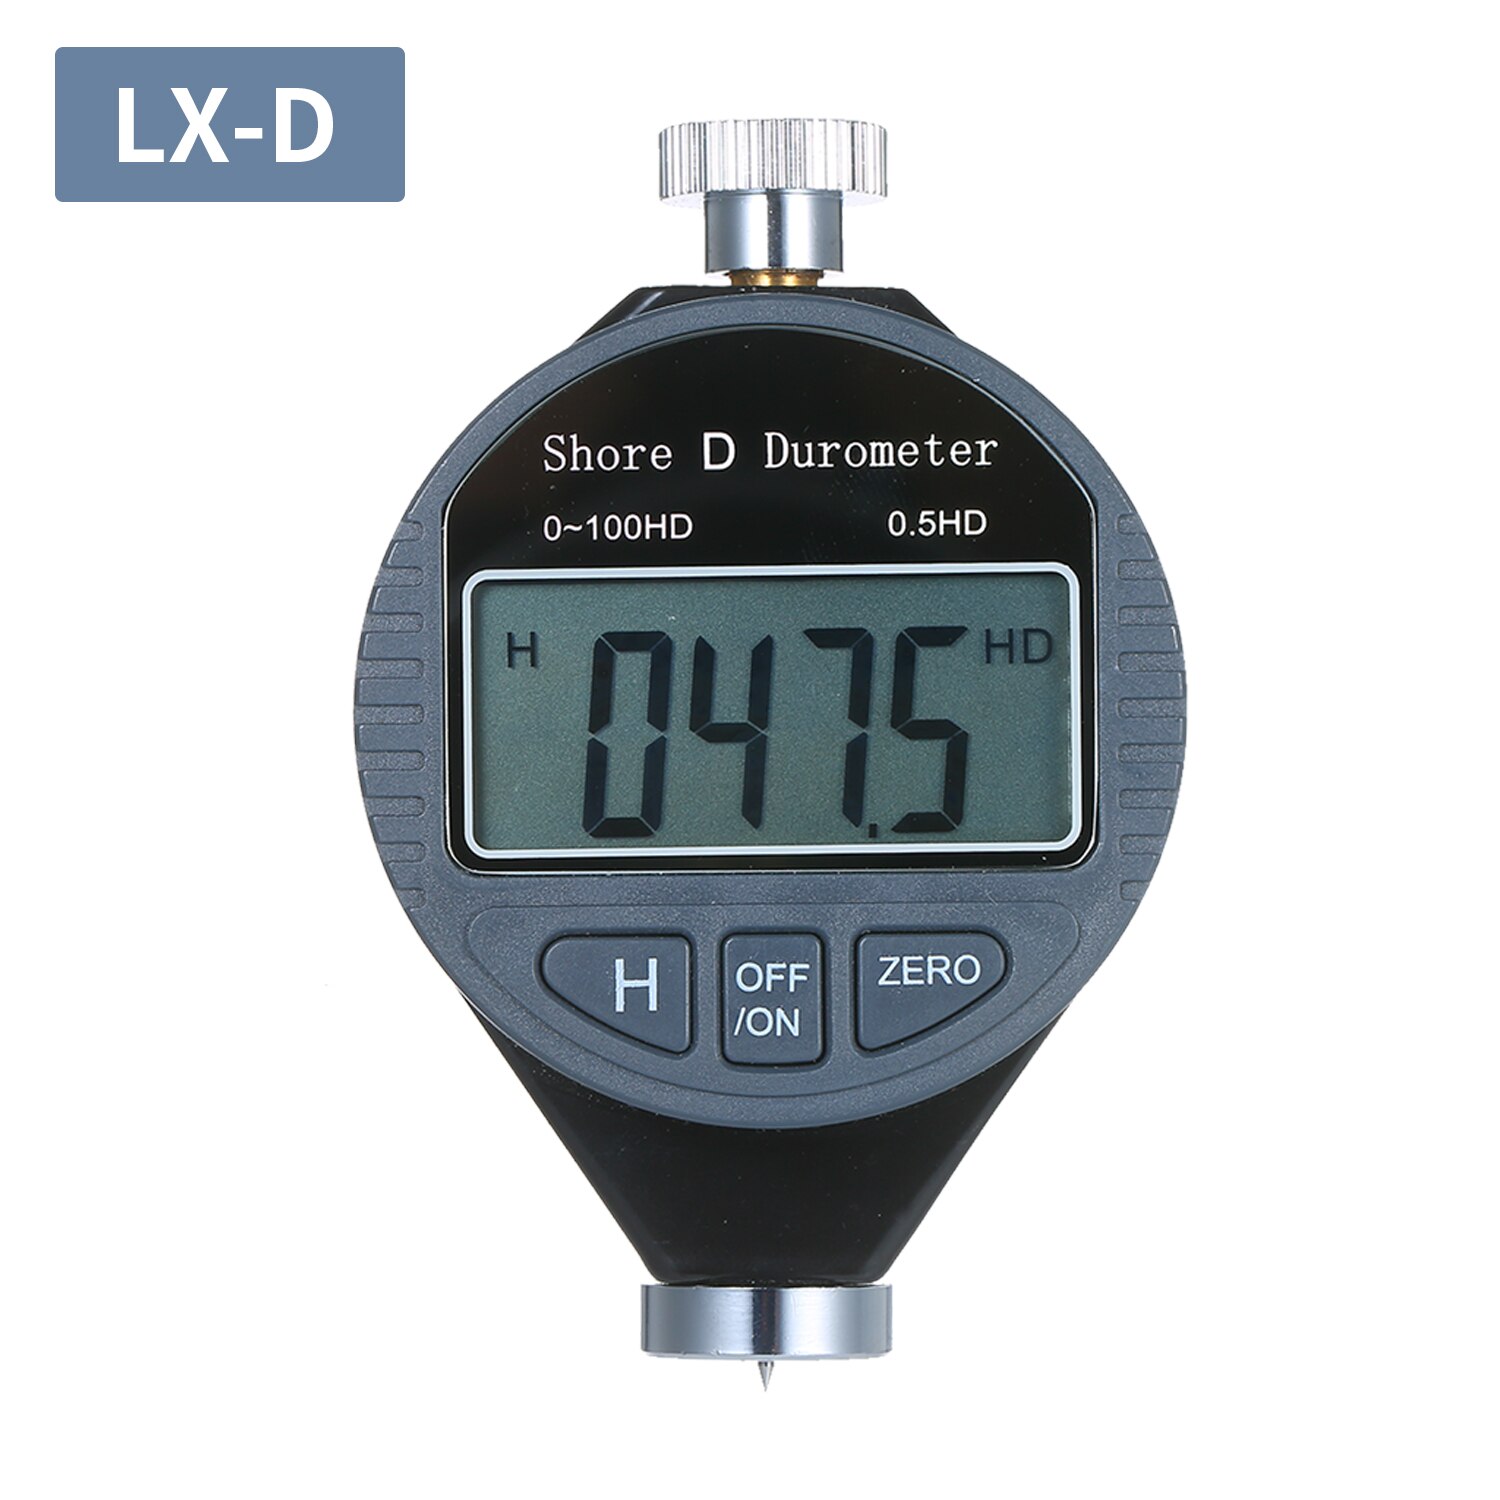 Bærbar 0-100hd shore d hårdhedsmåler digital durometer skala til gummidæk plastgulve med stort lcd-display: Lx -d 0-100hd